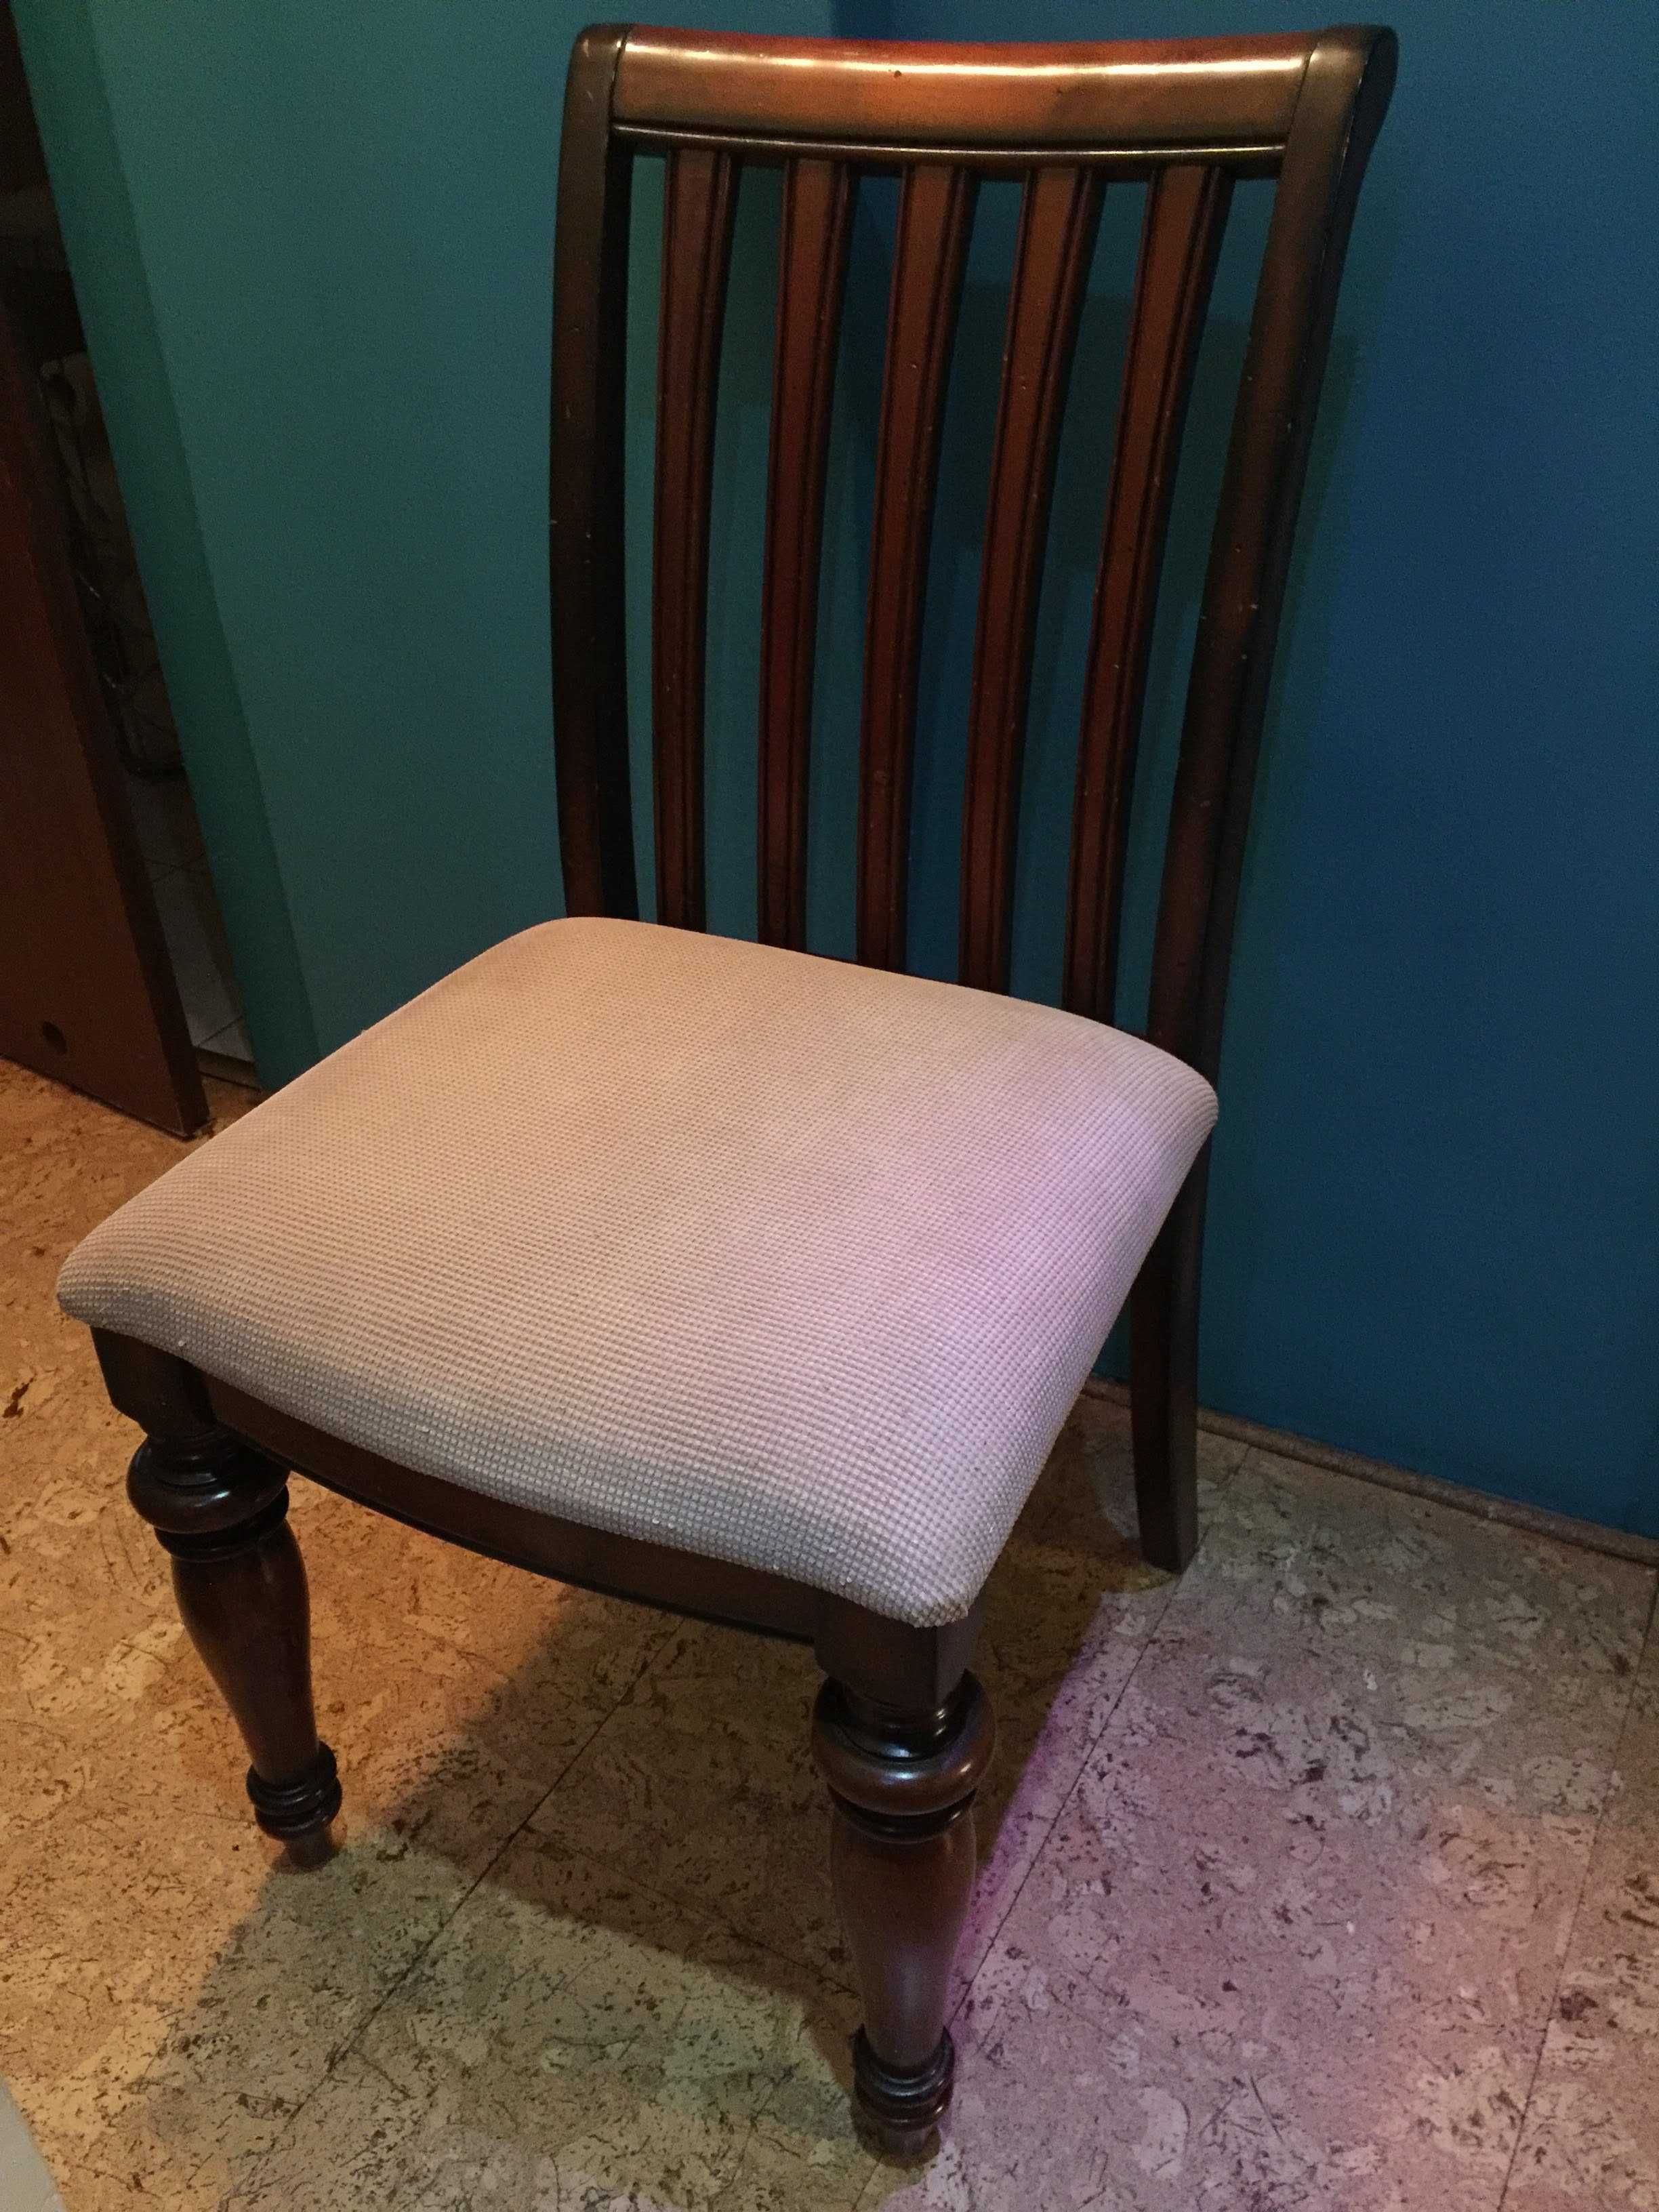 Krzesło drewniane stylowe